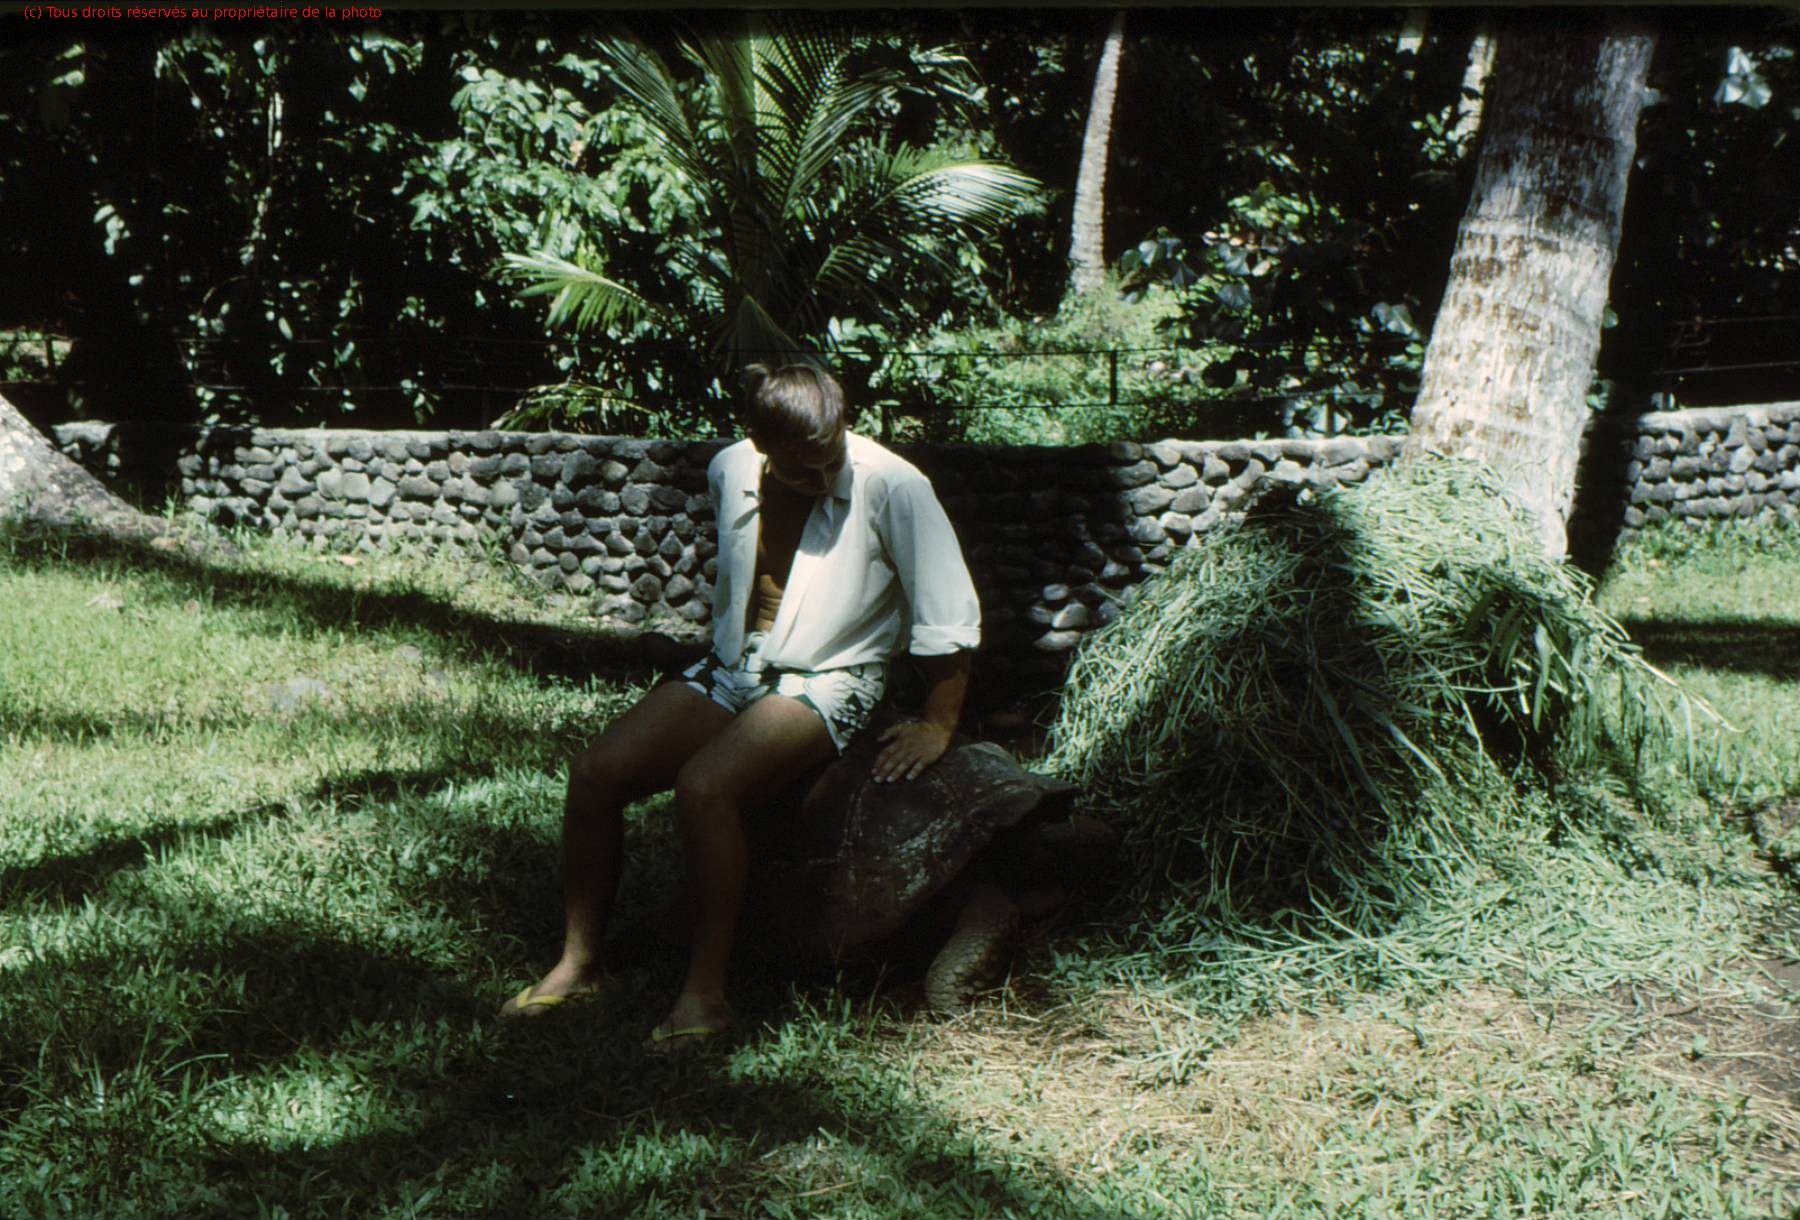 TAHITI 1967-68 (11)